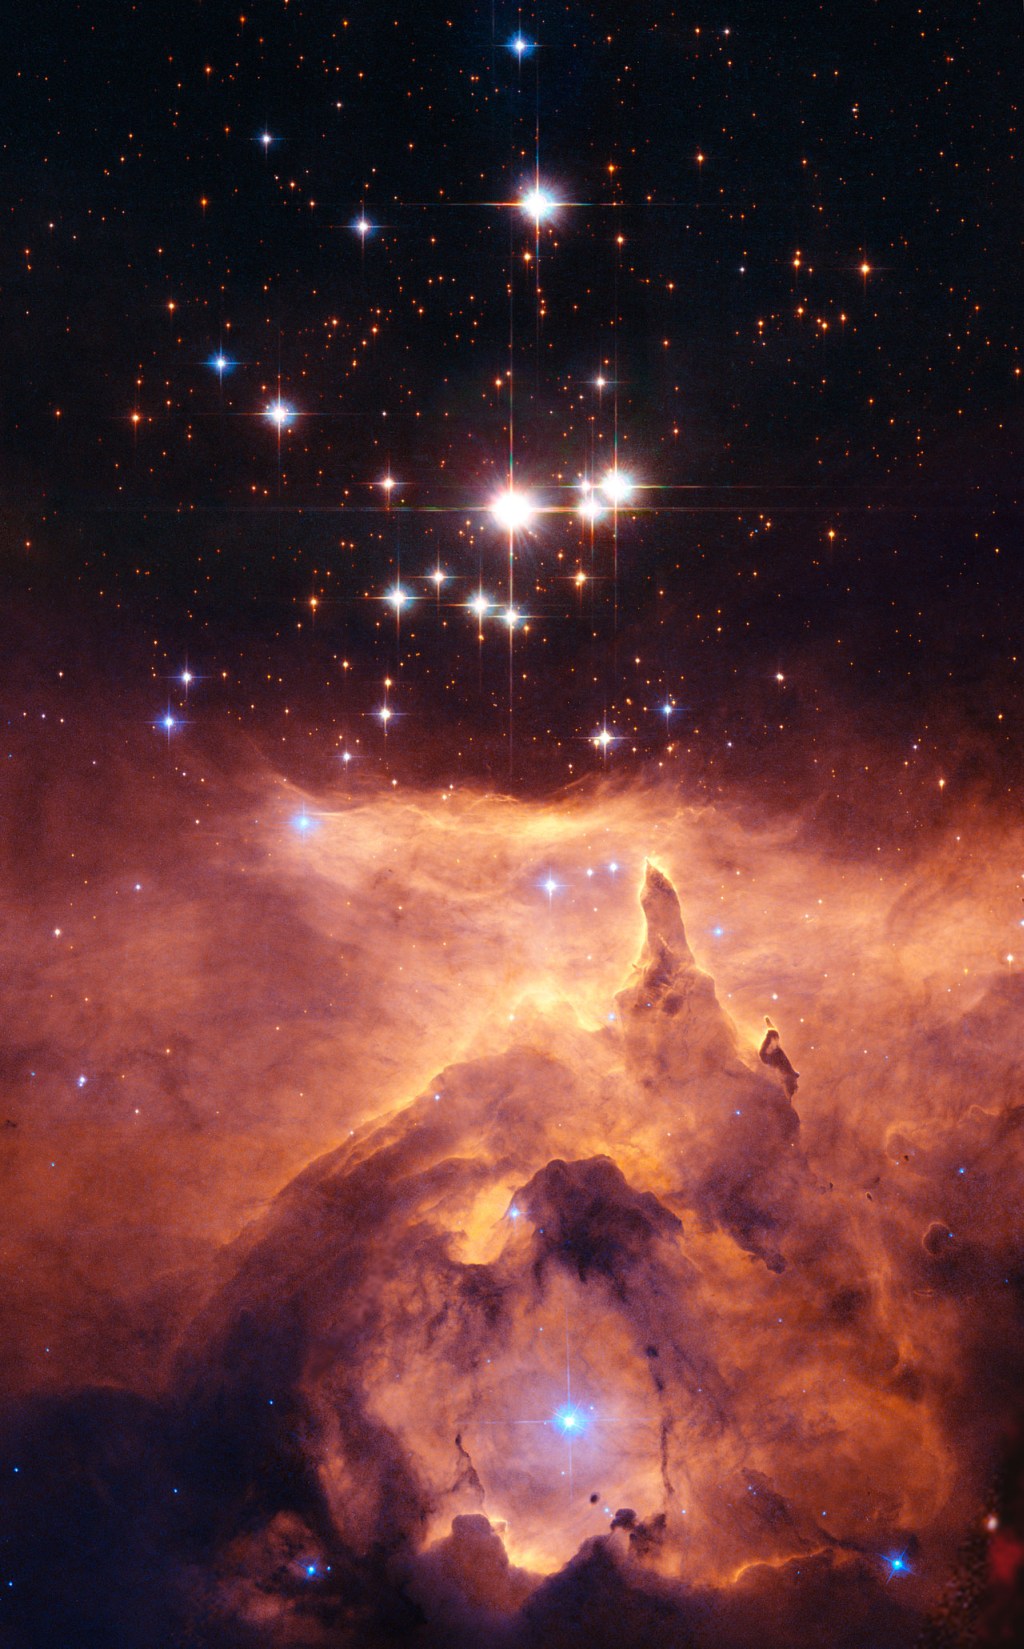 Скопление звезд Prismis 24, находящееся в яркой эмиссионной туманности NGC 6357